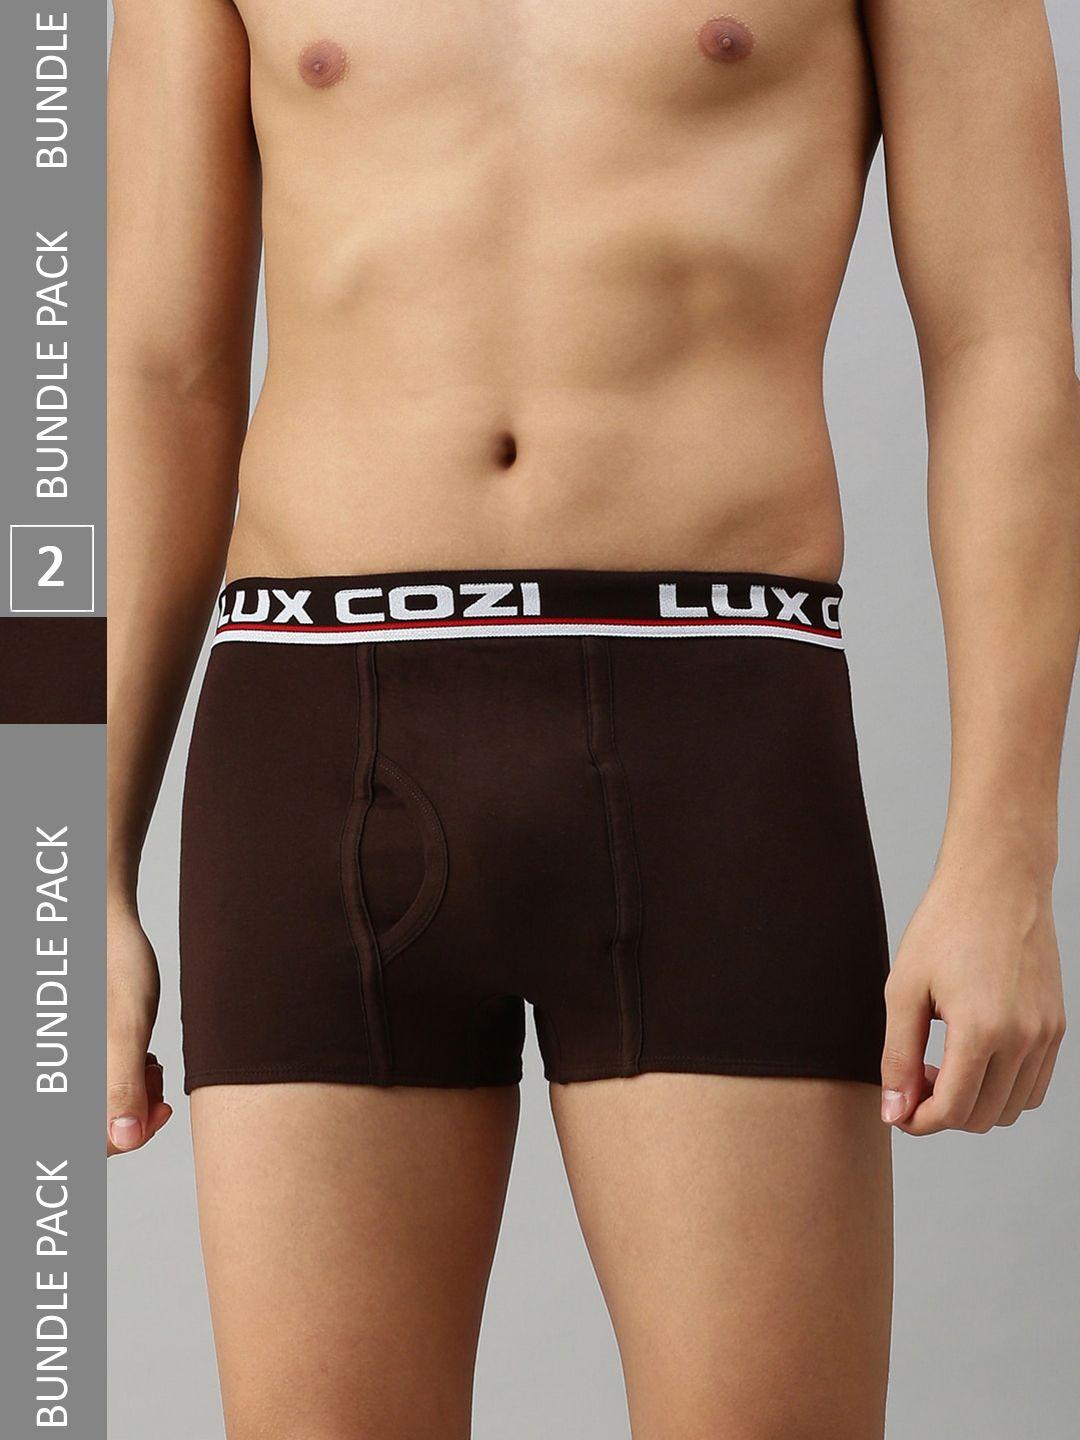 lux cozi men pack of 2 mid-rise short length trunks